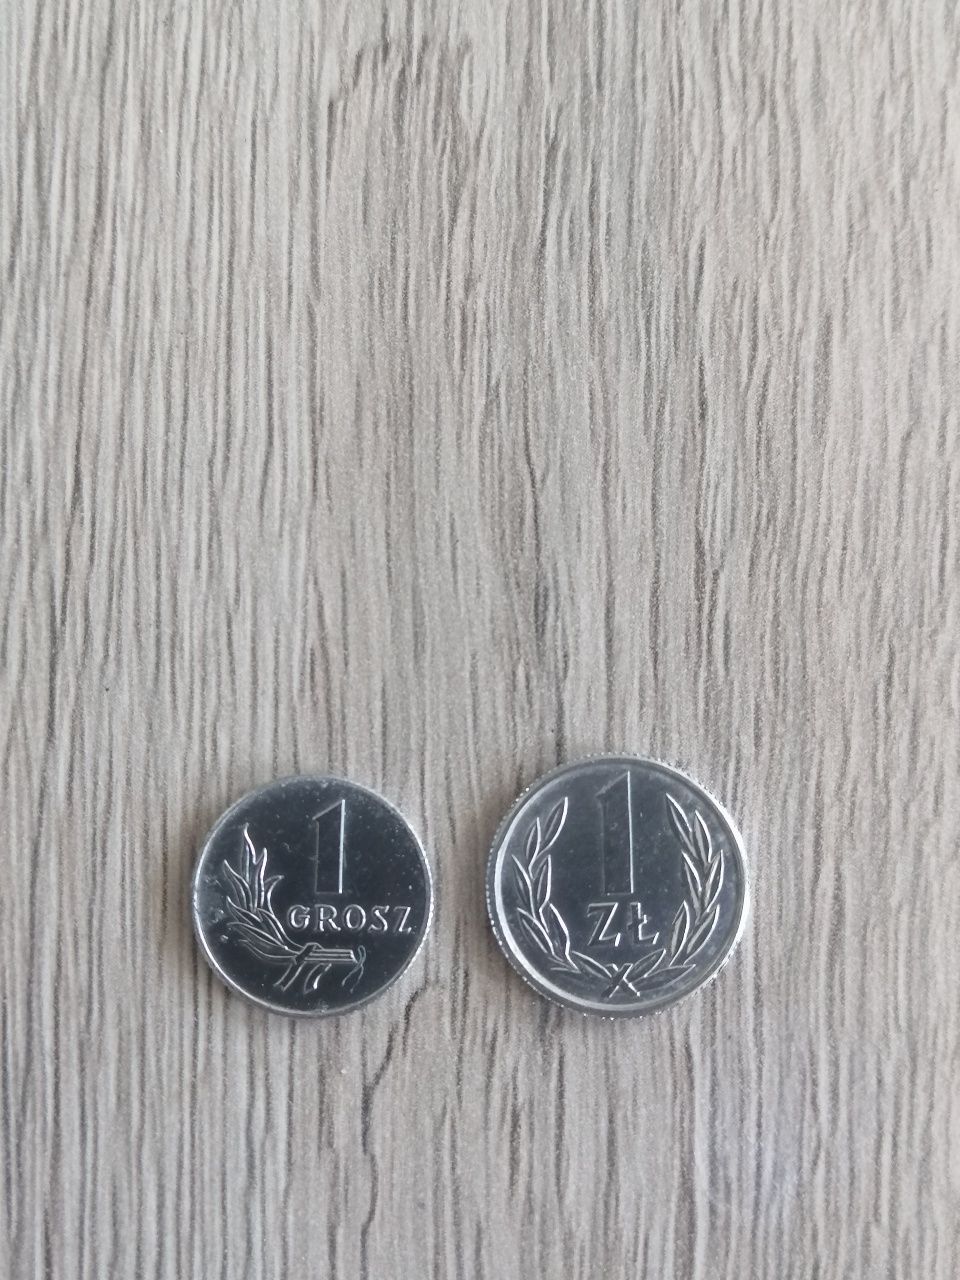 Stare monety polskie, Niemcy,Anglia Czechy, Słowenia, Chiny.